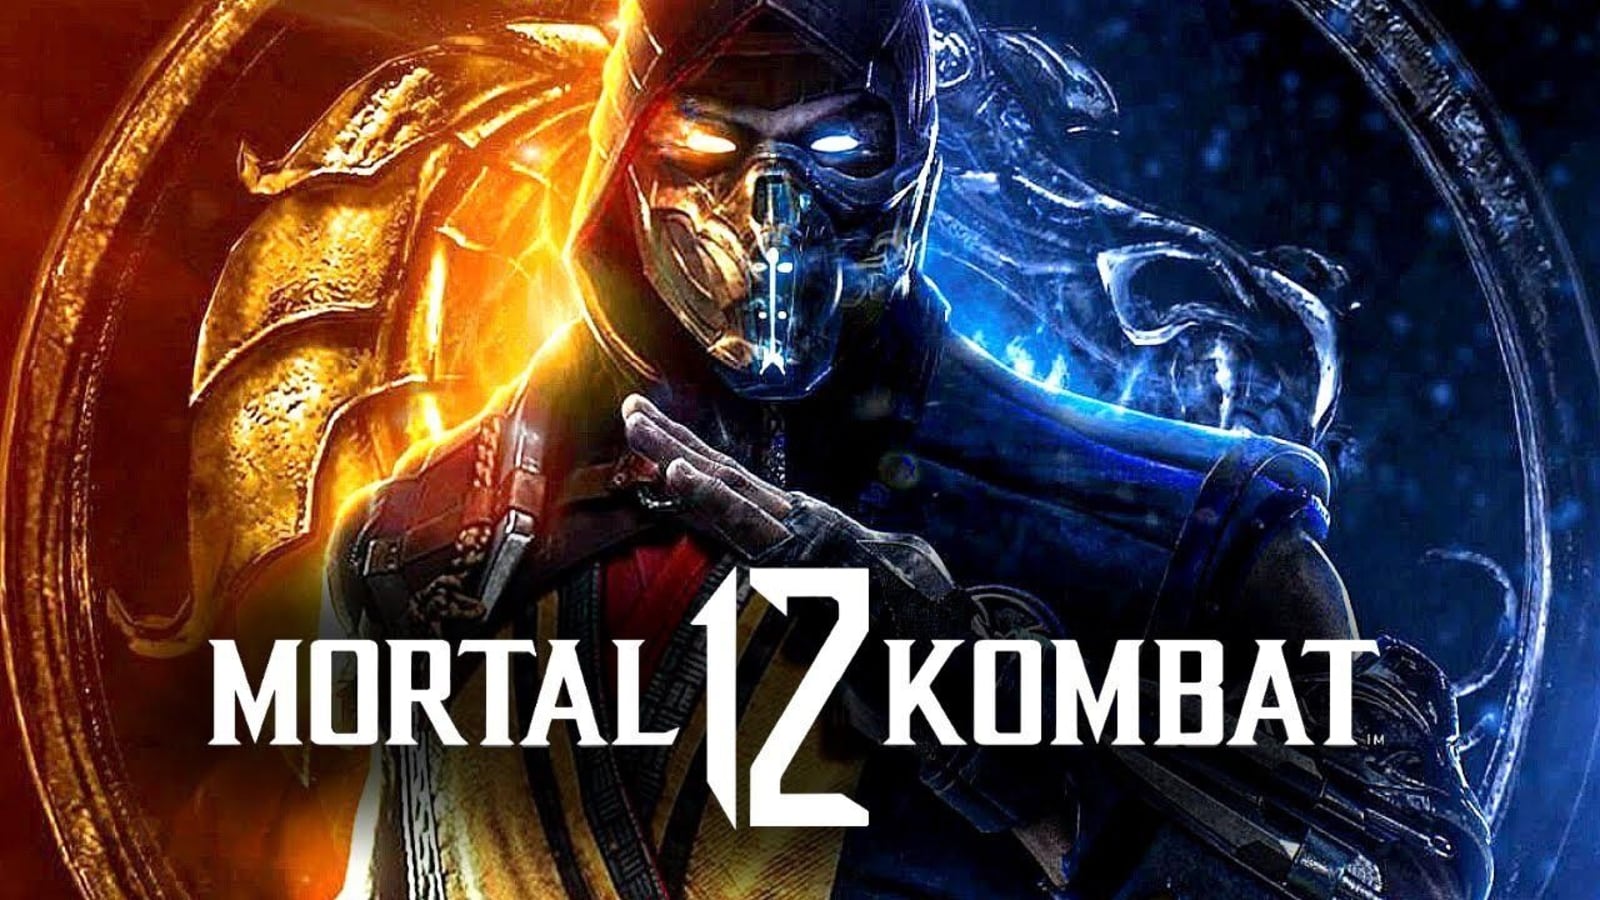 Leak suggests Mortal Kombat 12 may